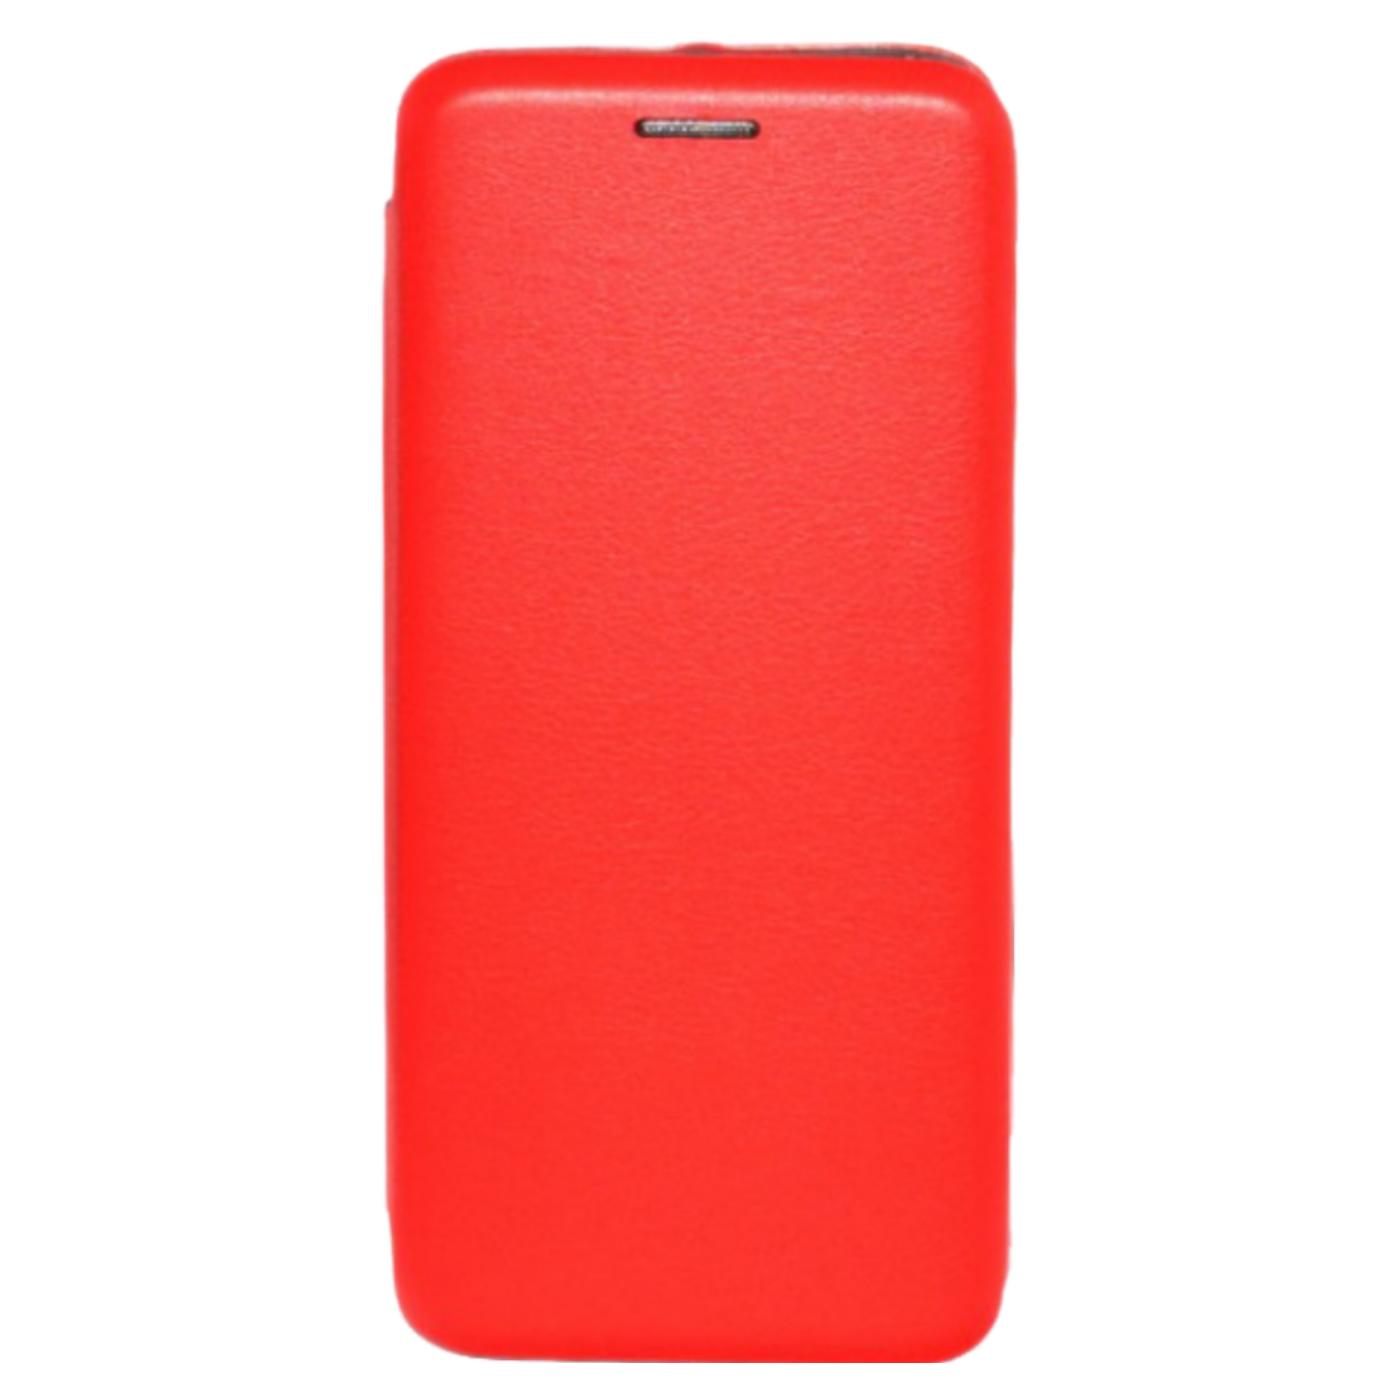 Futrola za mobitel Samsung S8, FLIP, crvena